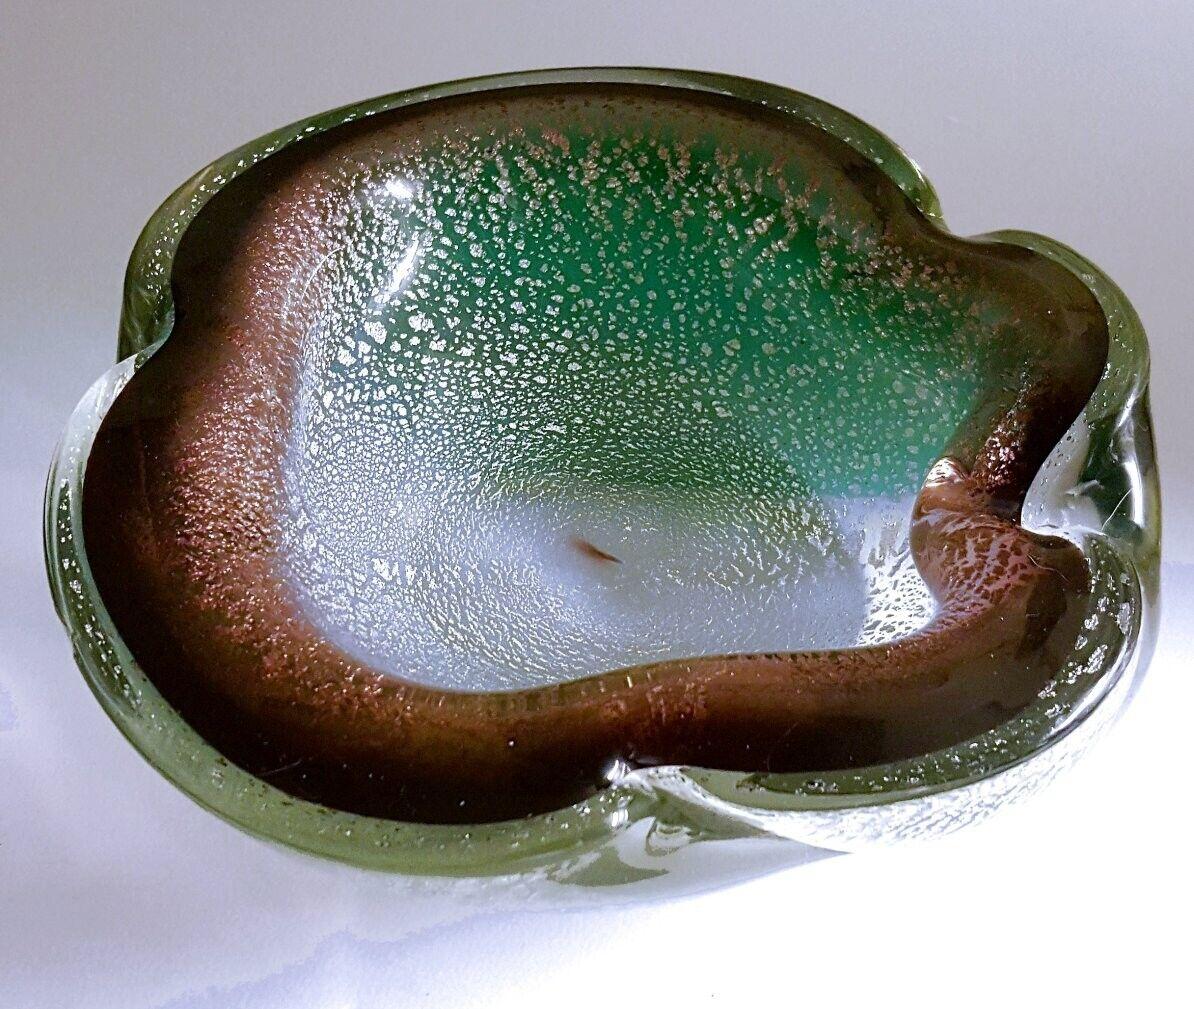 Seltene Murano-Glasschleife von Giulio Radi für A.V.e.M. - Wunderschön!

Diese beeindruckende und seltene Murano-Glasschale, Aschenbecher oder Schmuckschale wird Giulio Radi zugeschrieben, einem der bedeutendsten Künstler von AVeM. Herr Radi starb